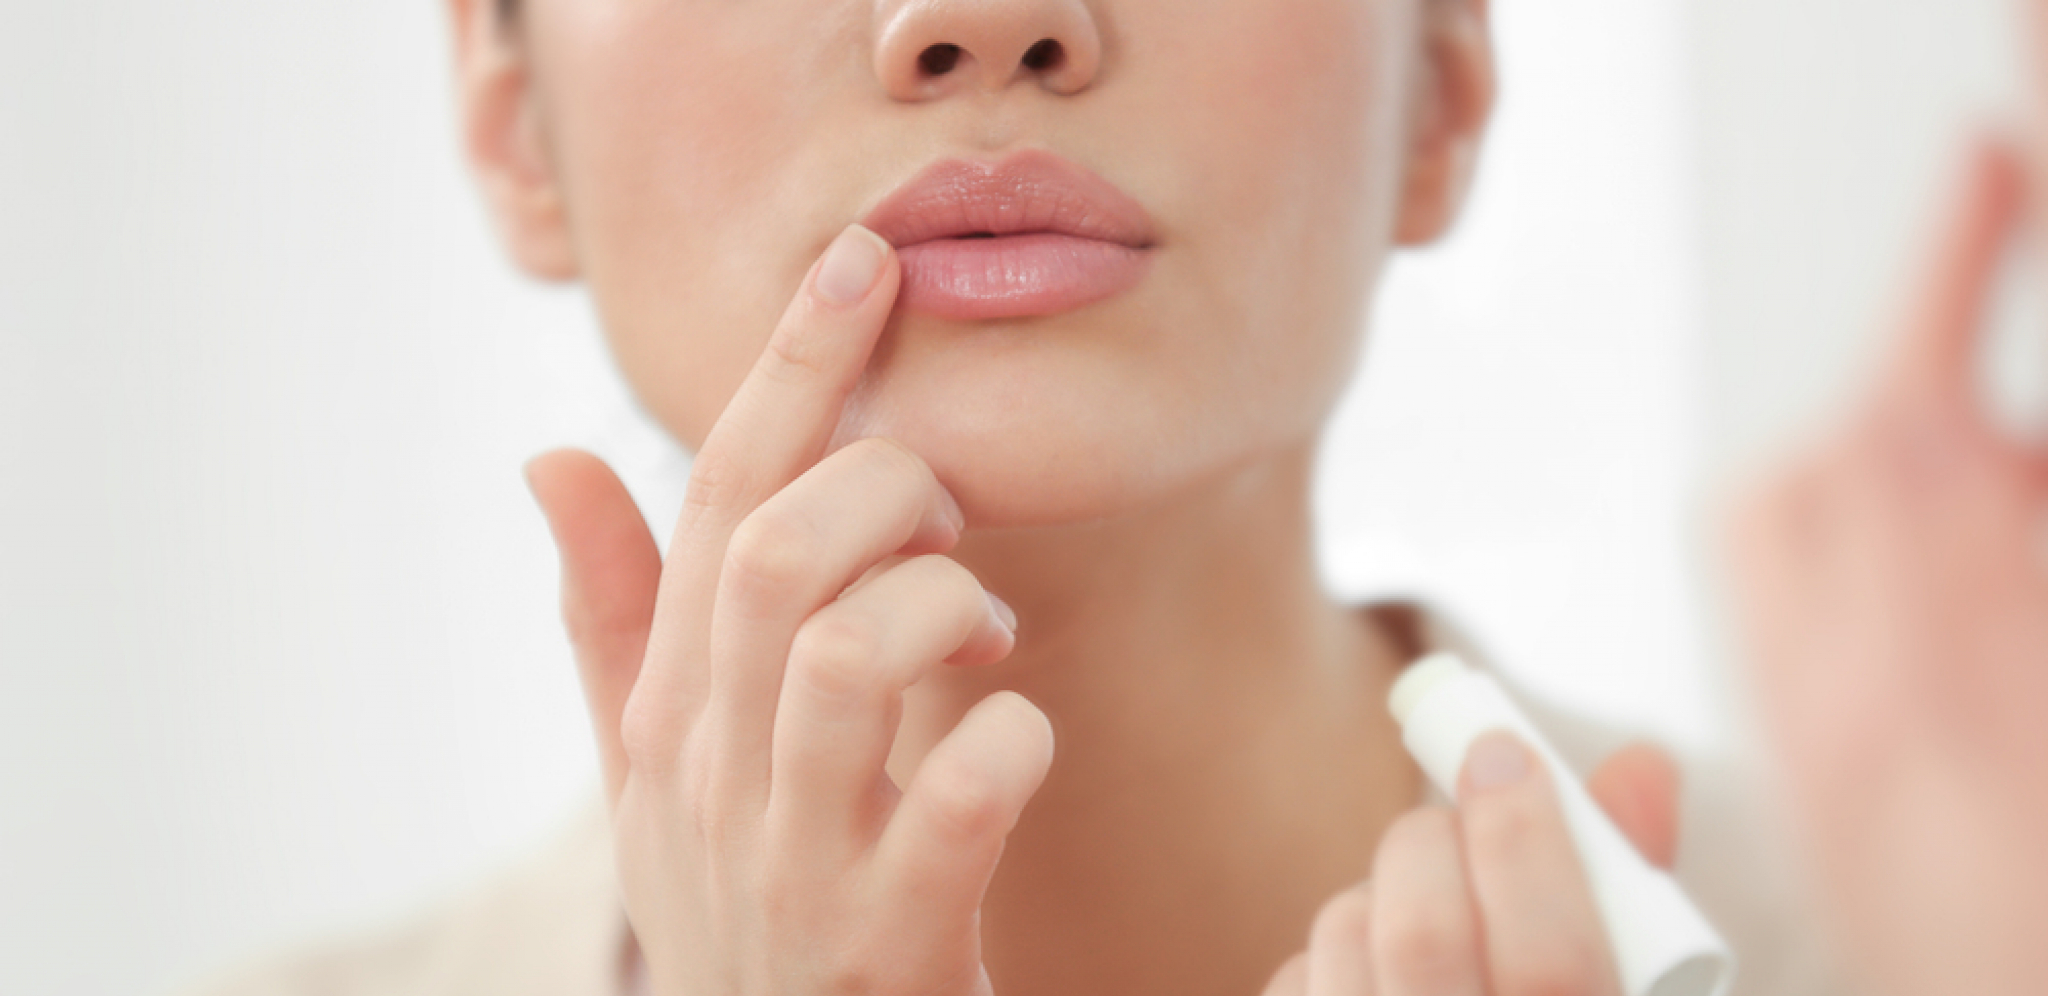 Da izgledaju negovano: Tri koraka za podmlađivanje usana